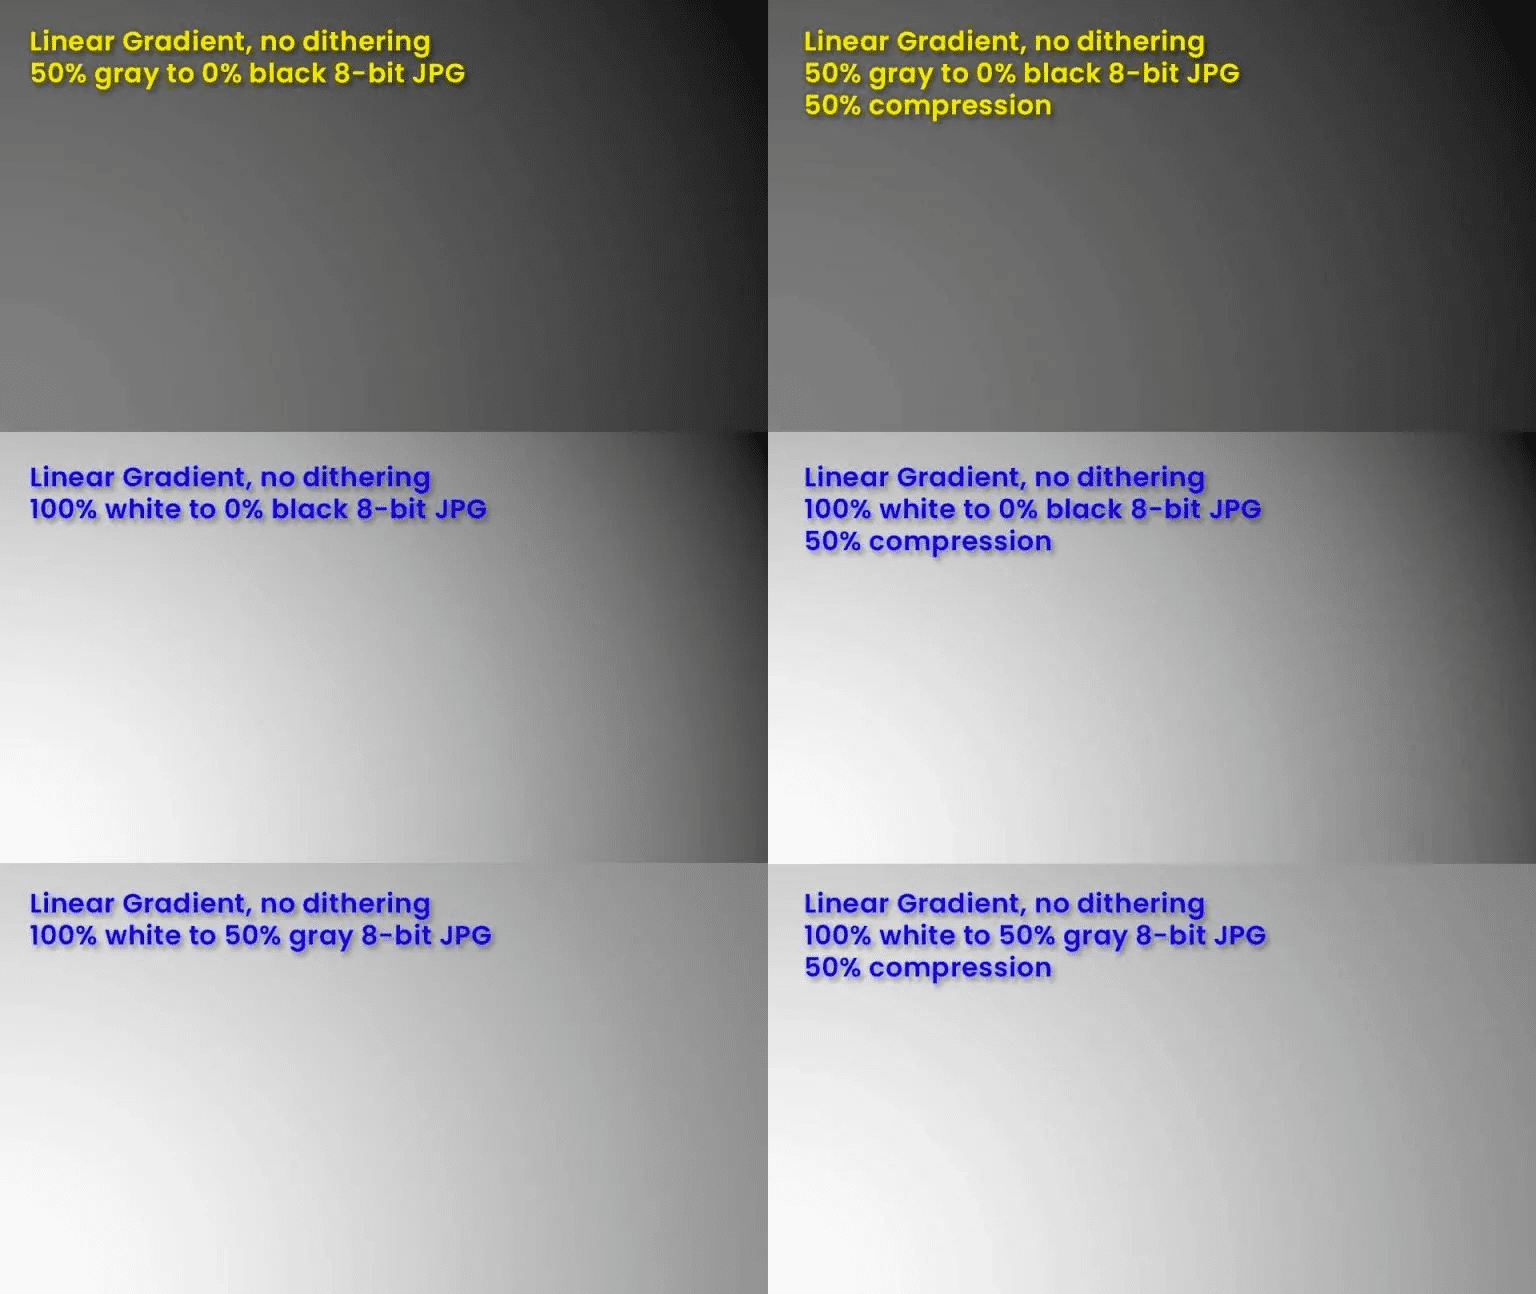 इसमें छह पैनल दिखाए जाते हैं, हर पैनल में अलग-अलग ग्रेडिएंट बैंडिंग होती है.
    साथ ही, कंप्रेस करने और गहराई की गहराई के बारे में थोड़ी जानकारी होती है.